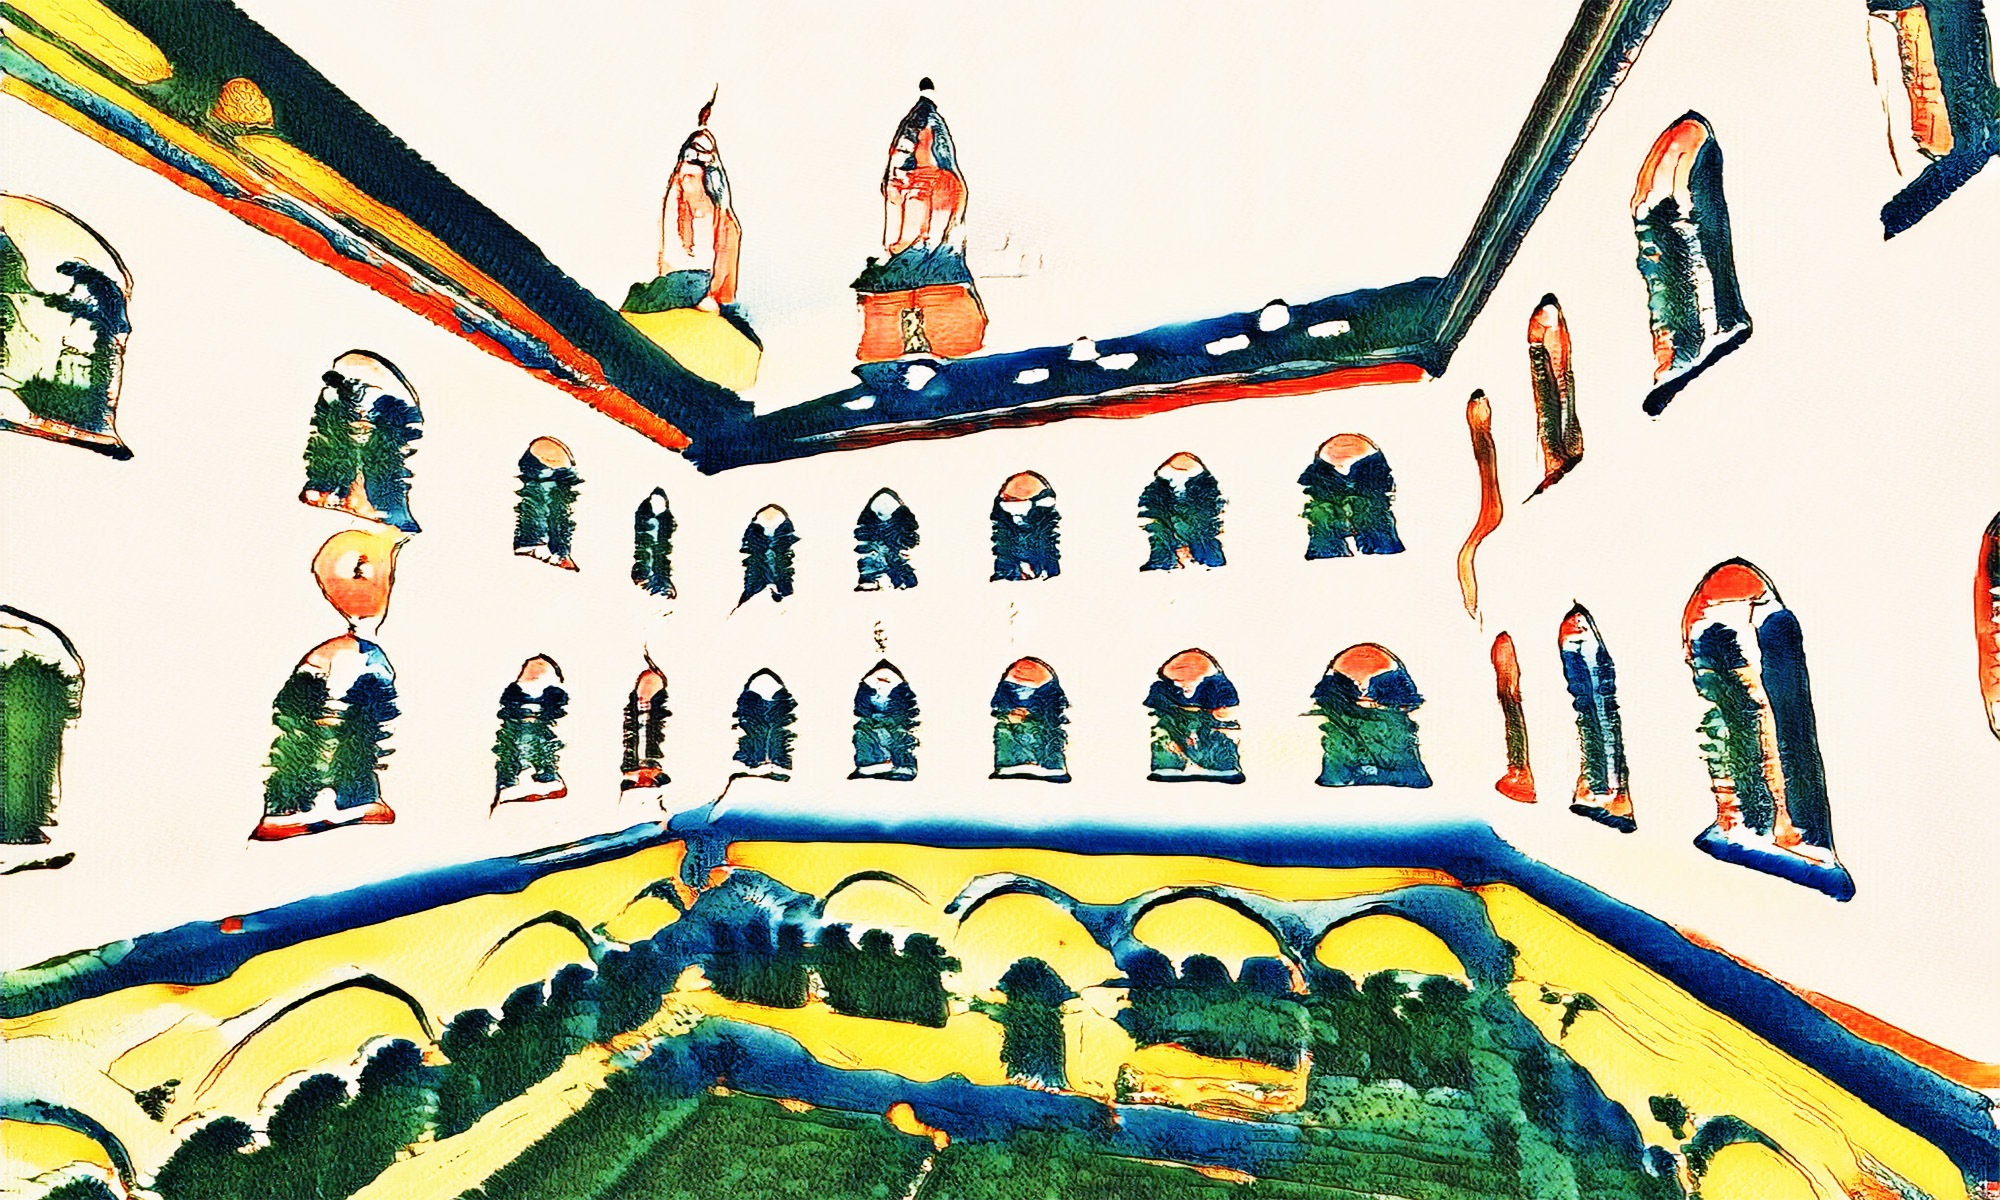 Blick auf Kirchgang/Innenhof des Fakultätsgebäudes (Kirchgasse 9), im Hintergrund die zwei Türme des Grossmünsters. Das Bild sieht aus wie mit Wasserfarbe gemalt, die Farbwelt weicht vom Original ab (künstlerischer Effekt).